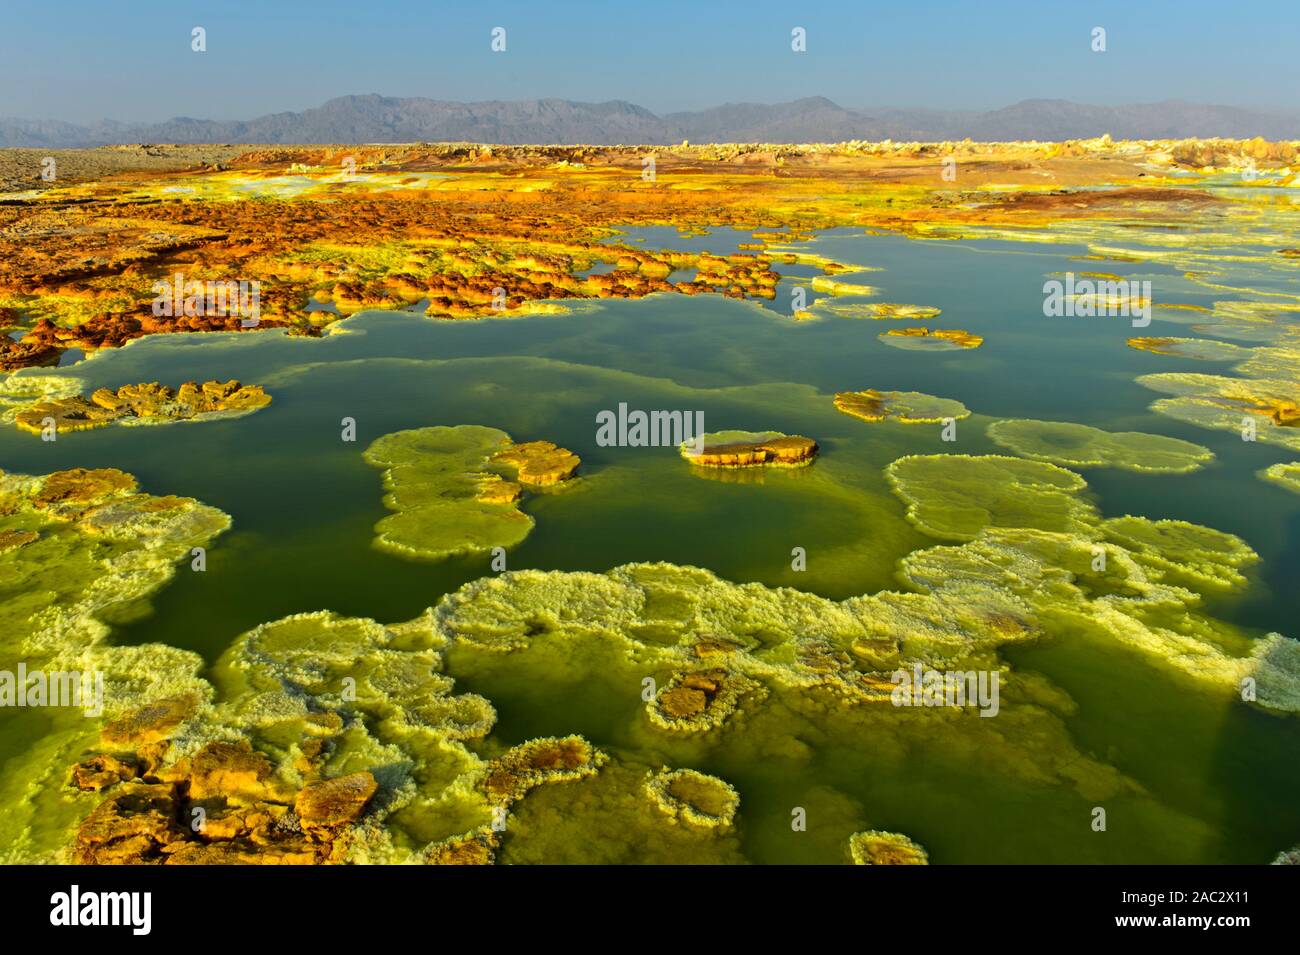 Sulfuros cristalizado en un ácido salmuera piscina, campo geotérmico de Dallol, la depresión Danakil, Triángulo de Afar, Etiopía Foto de stock